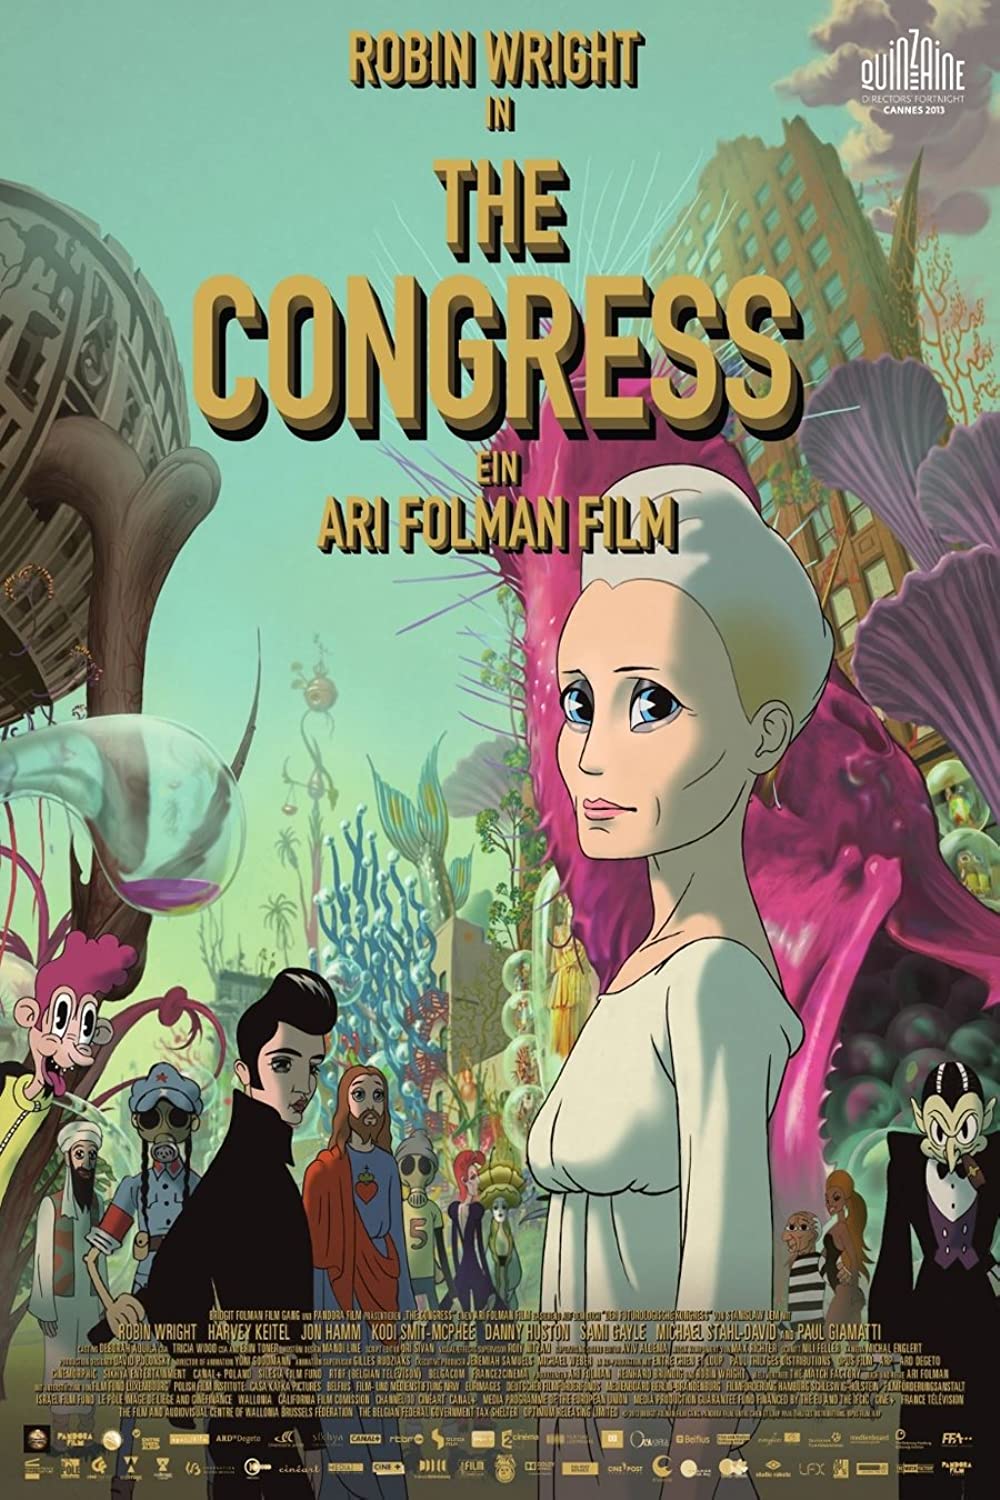 Filmbeschreibung zu The Congress